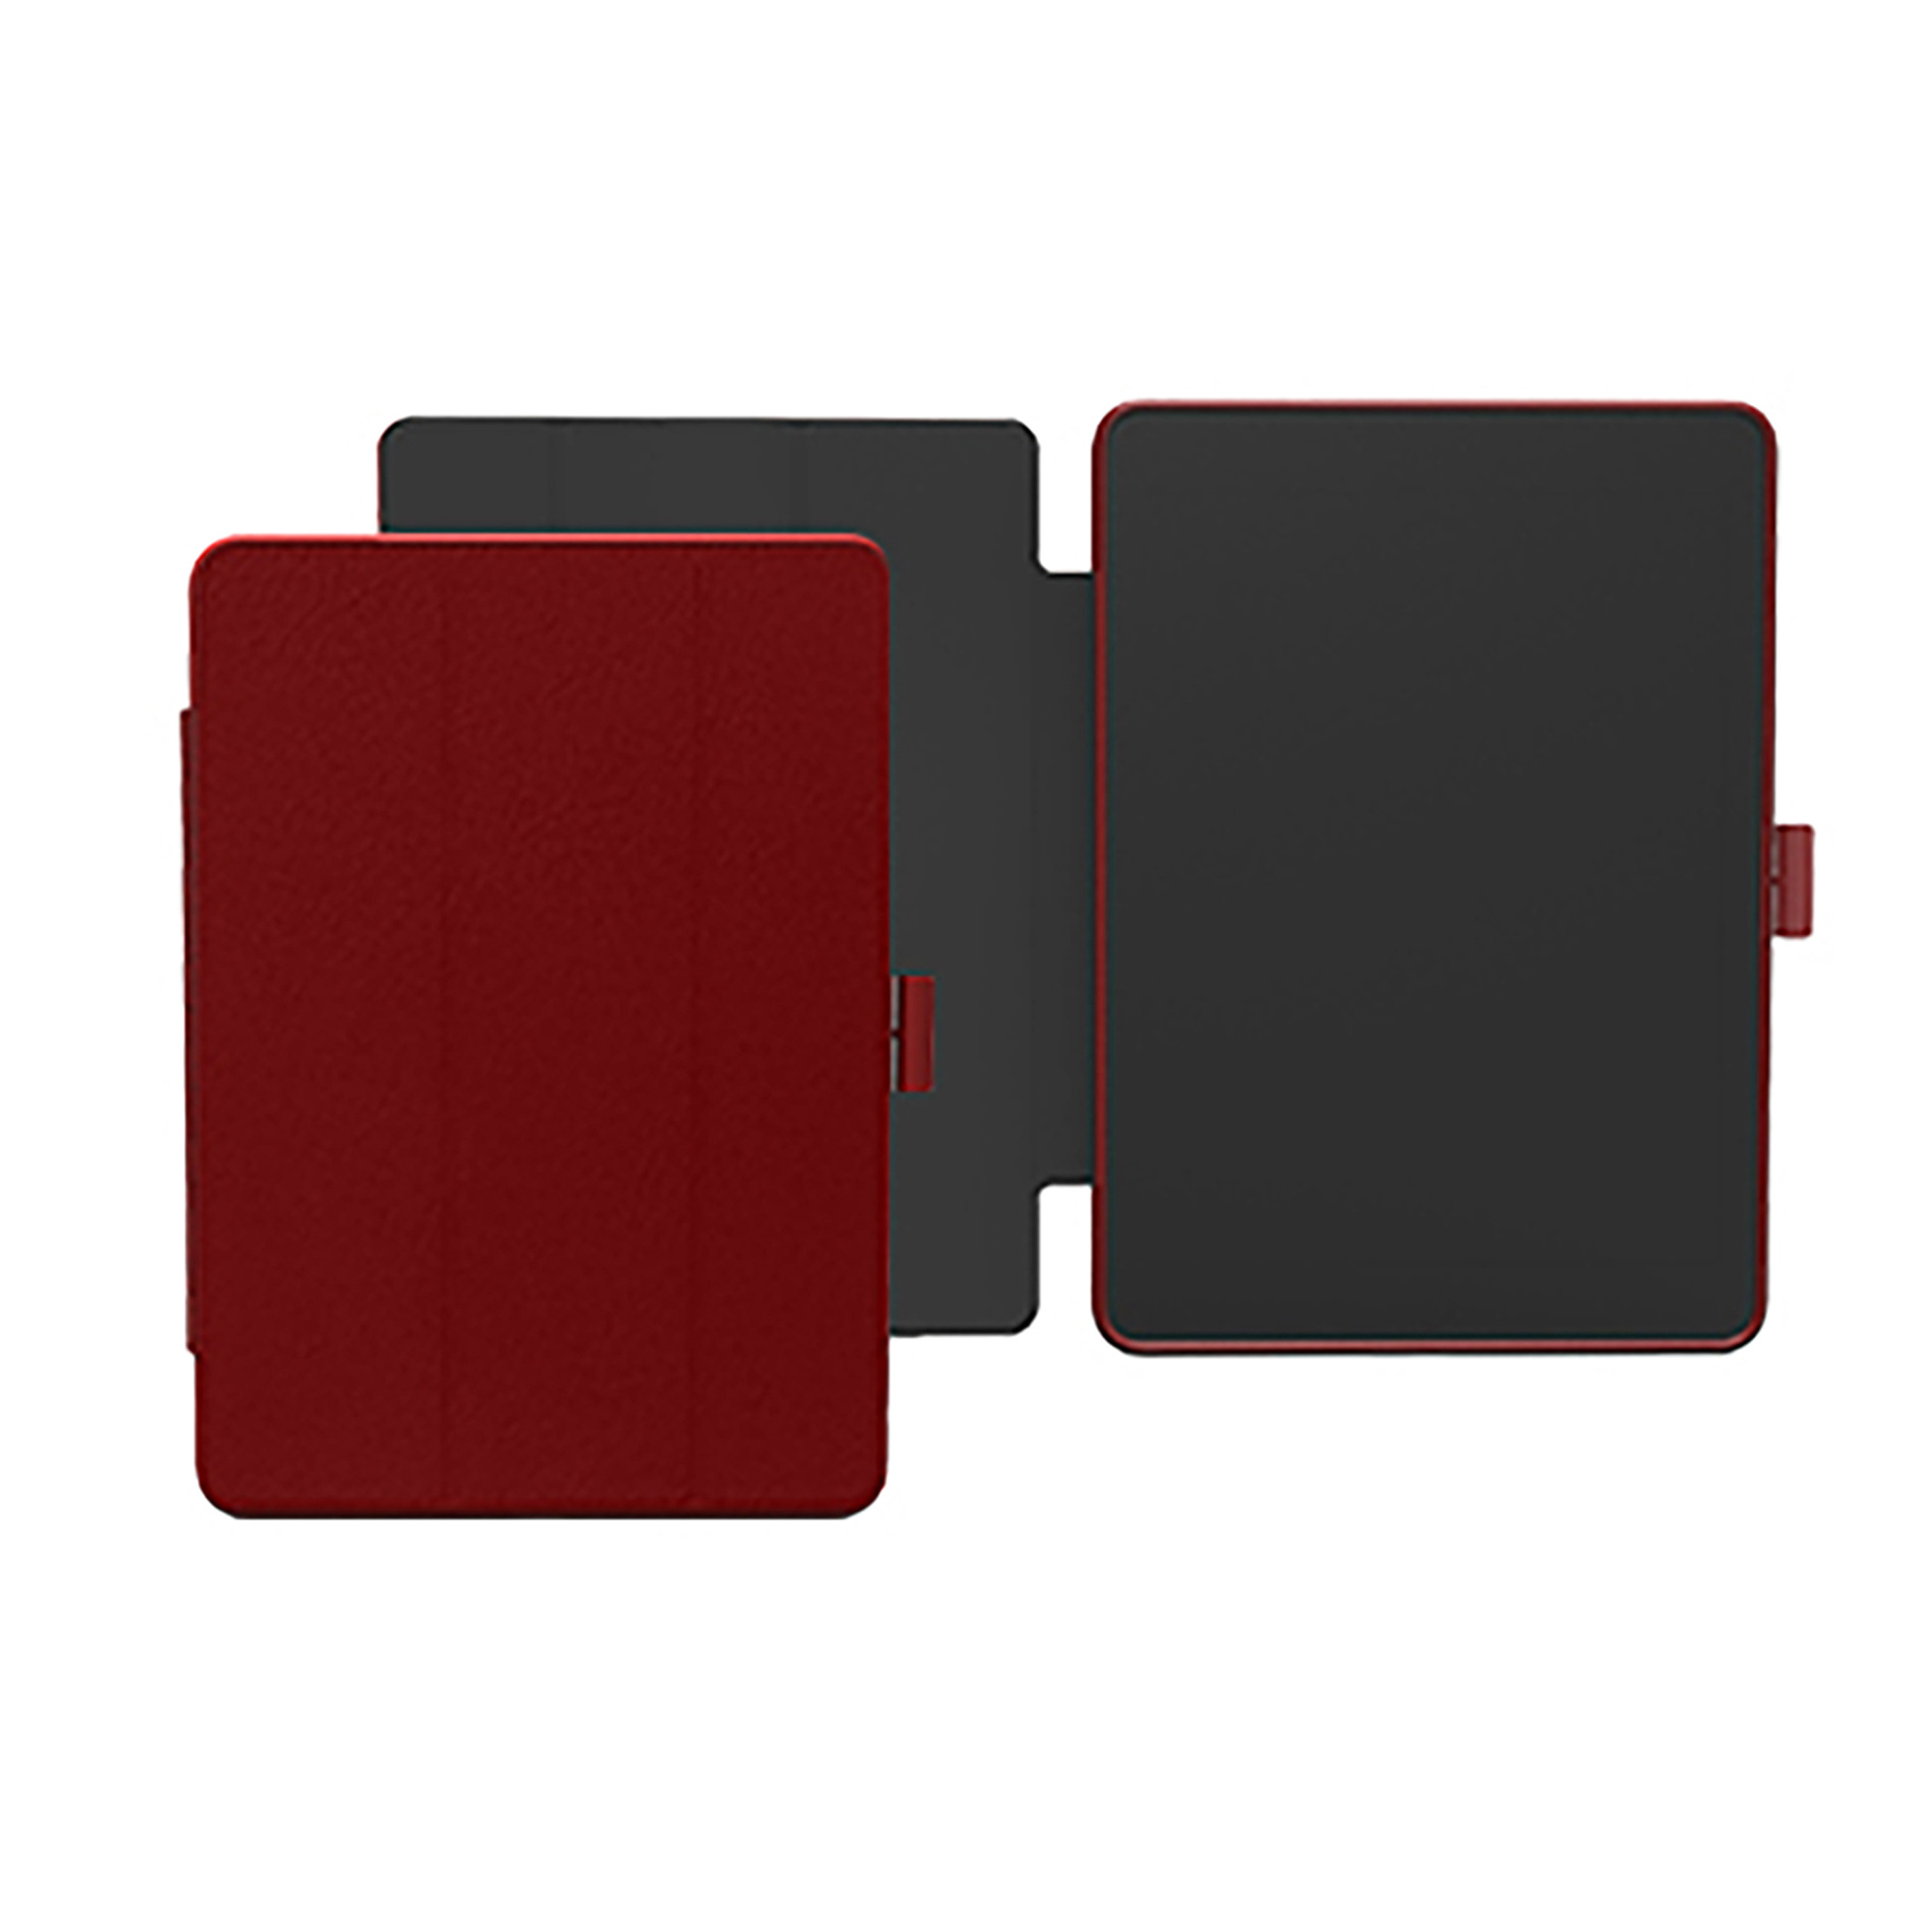 mit PC, KMP Apple biobasiertes cherry für Stiftfach iPad Material für Mirkofaser, Schutzhülle Cherry Protective 9,7 Red case in Backcover red Silikon, Lederoptik,